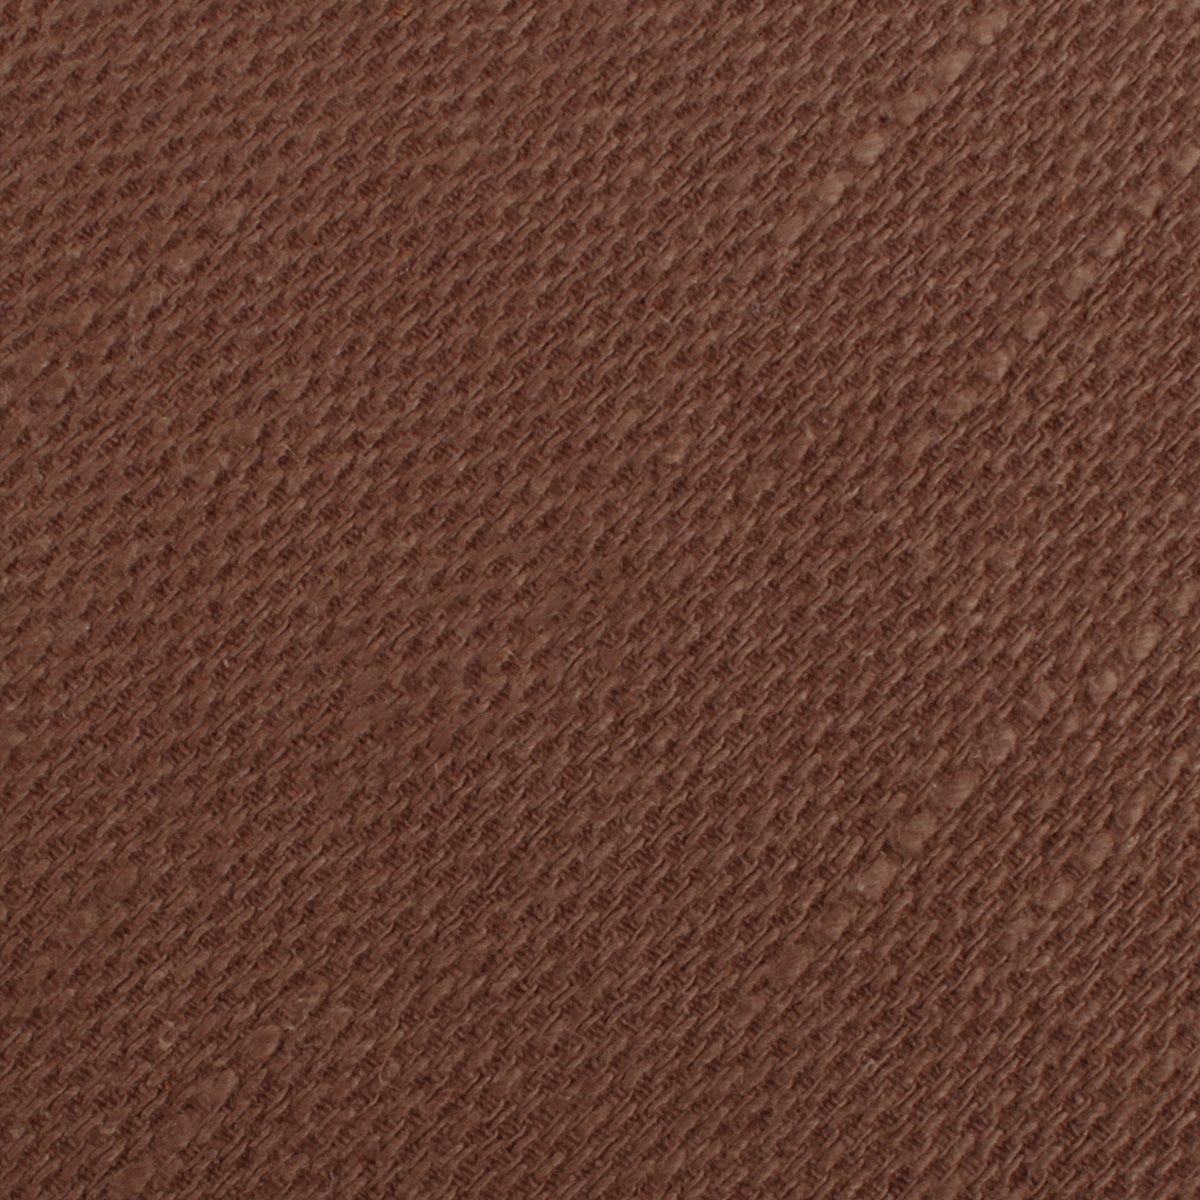 Cinnamon Brown Coarse Linen Pocket Square Fabric